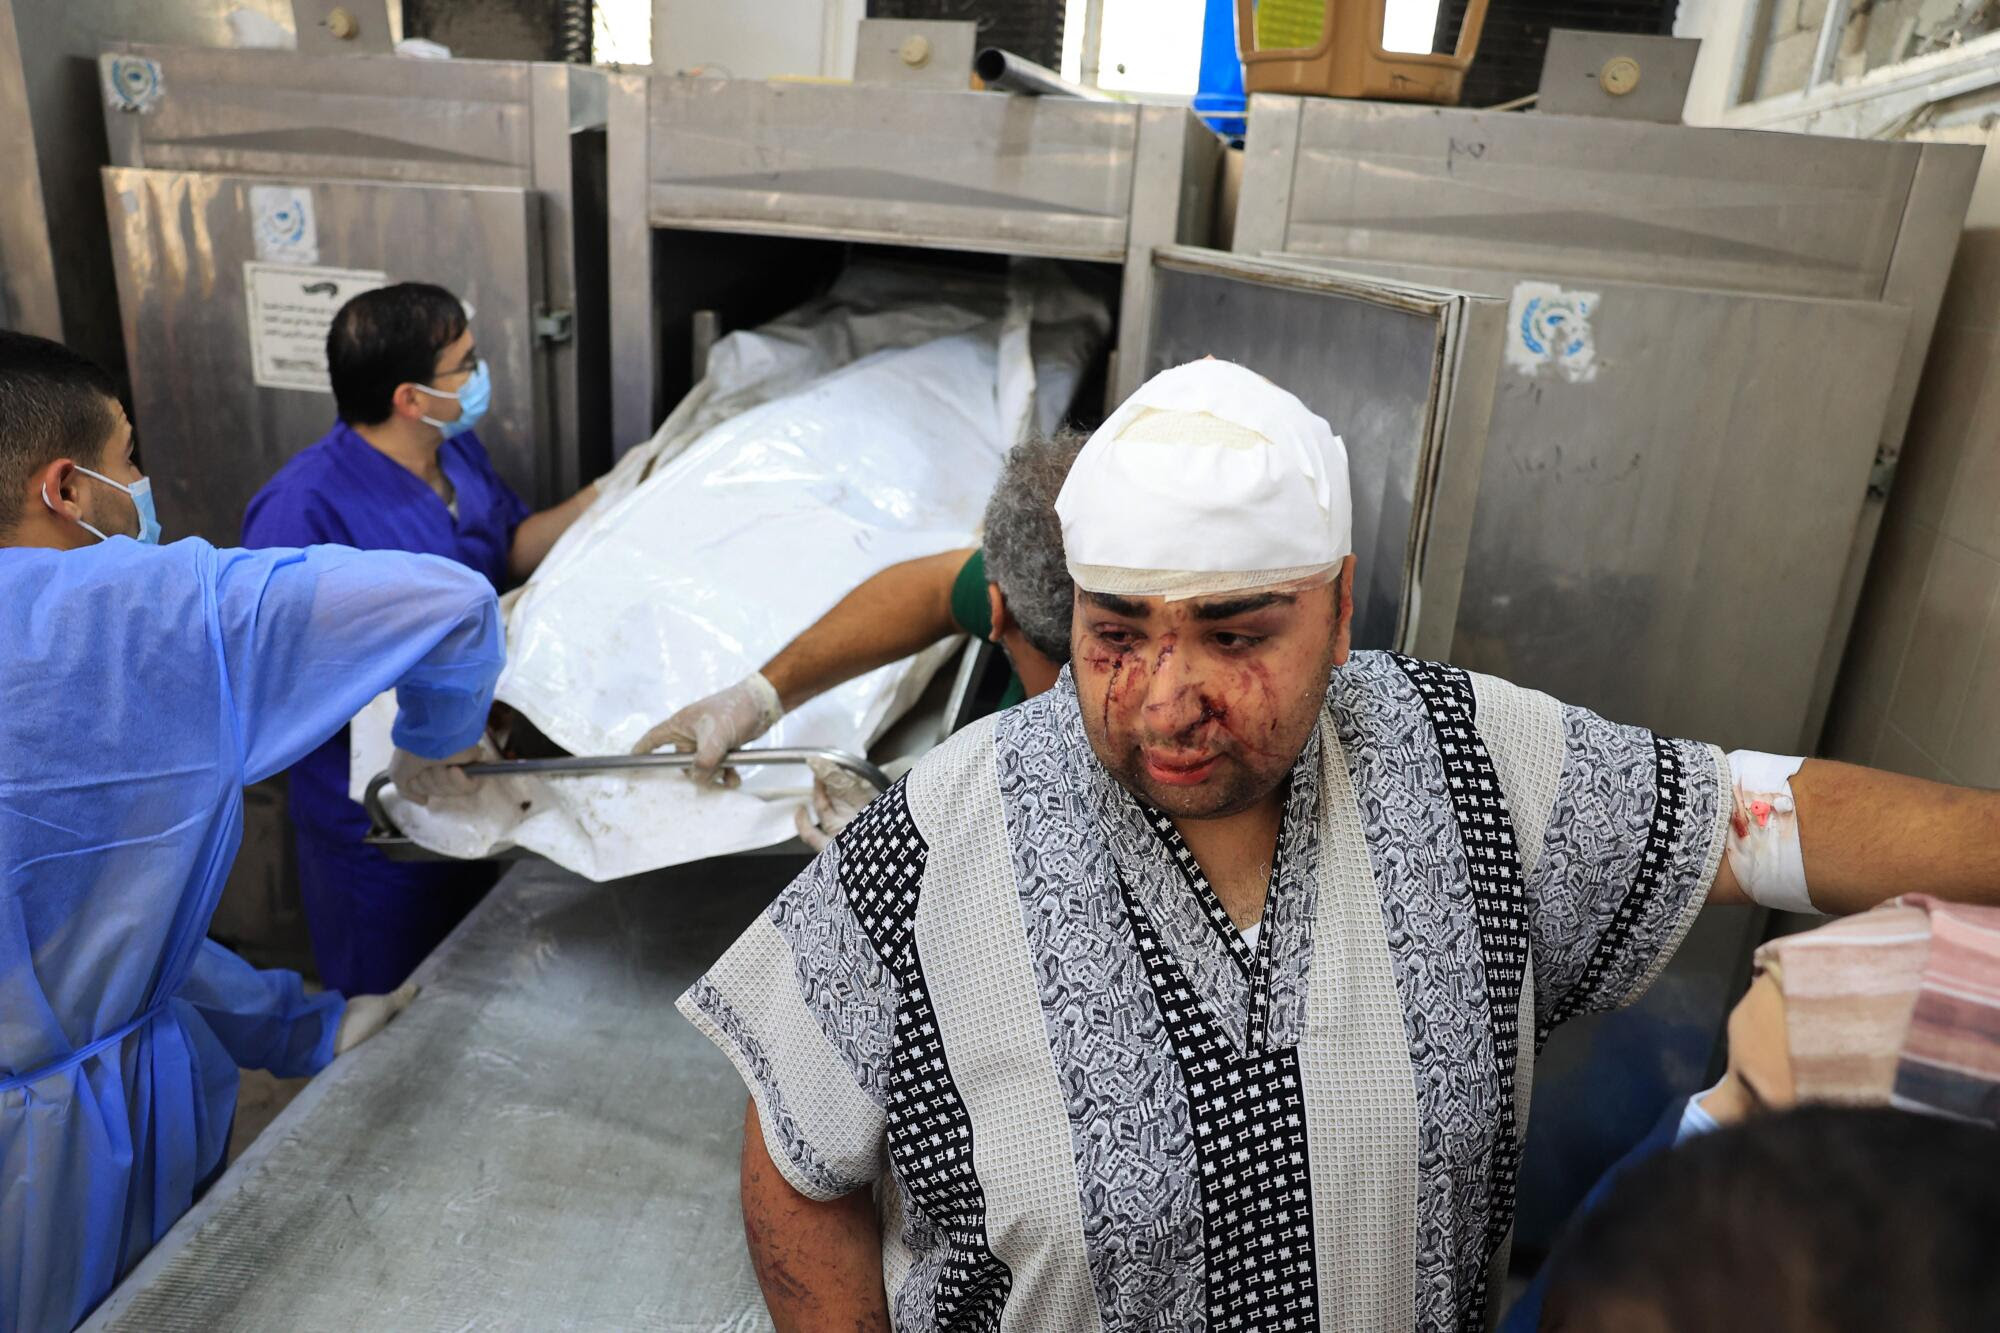 Un hombre herido observa mientras sacan un cuerpo del refrigerador de la morgue de un hospital.